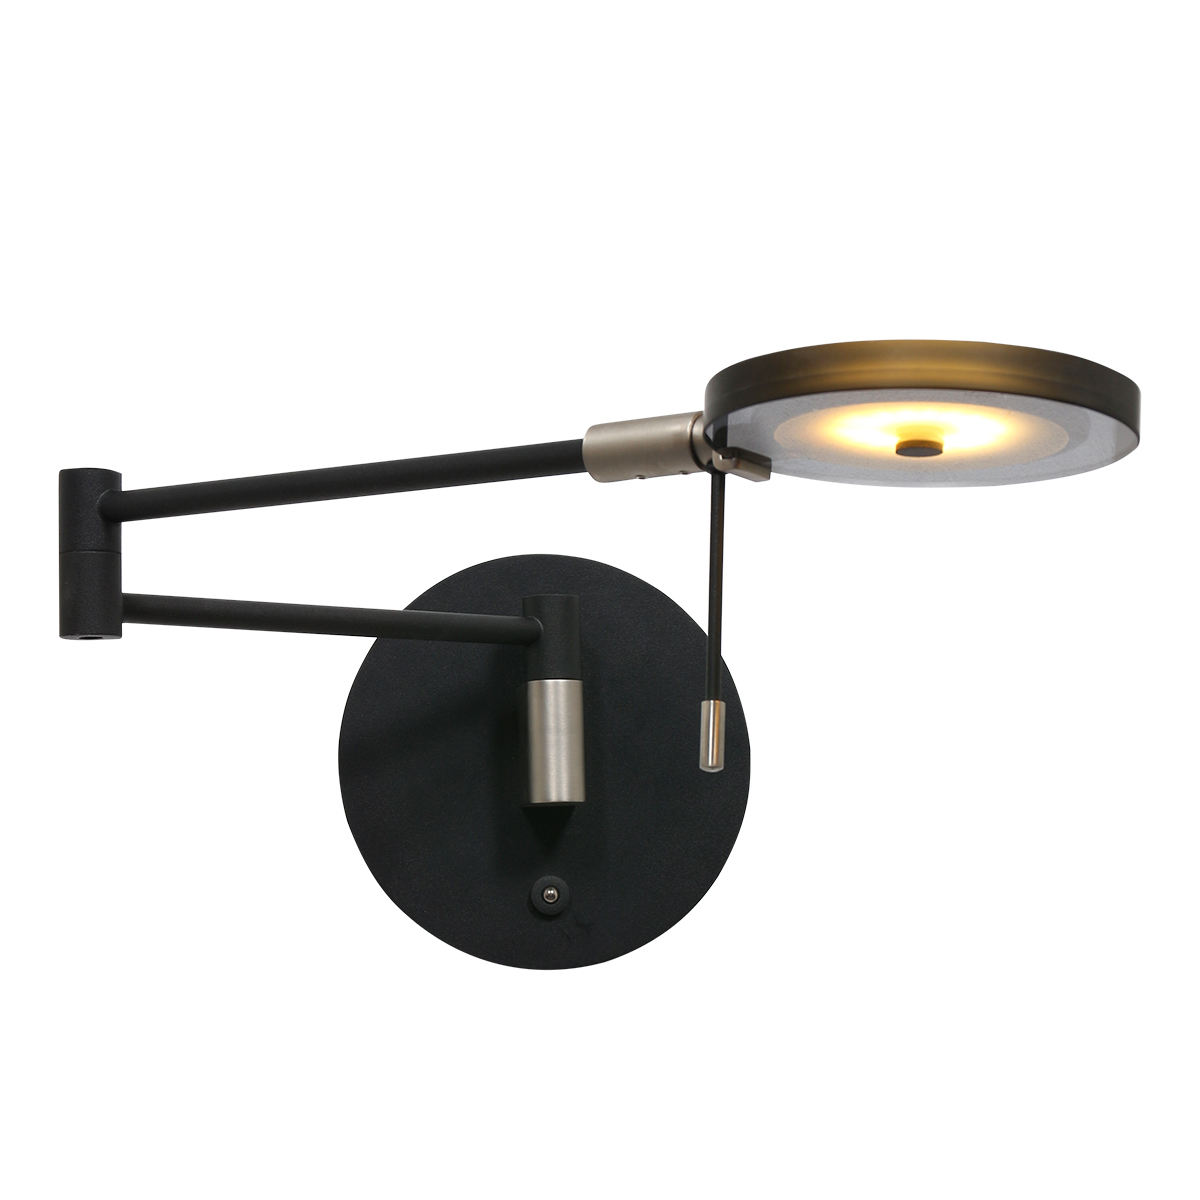 Turound wandlamp Design